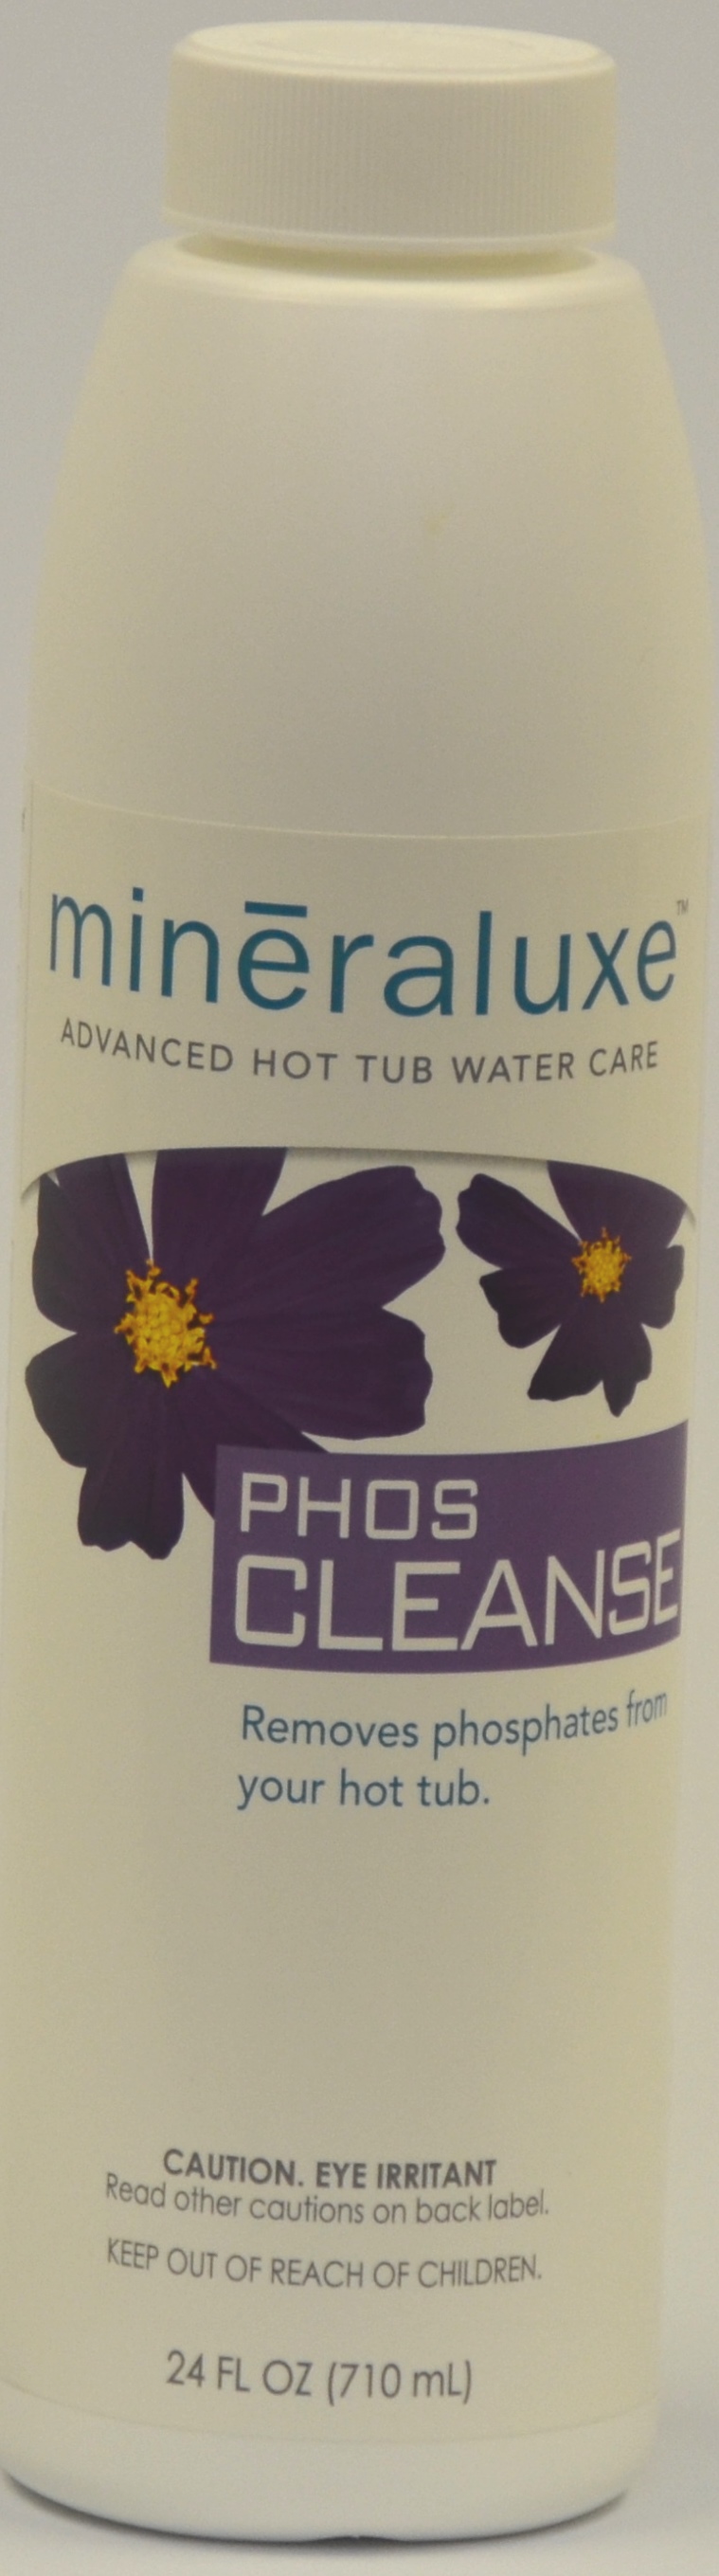 Mineraluxe Phos Cleanse 16 X 24 oz - VINYL REPAIR KITS